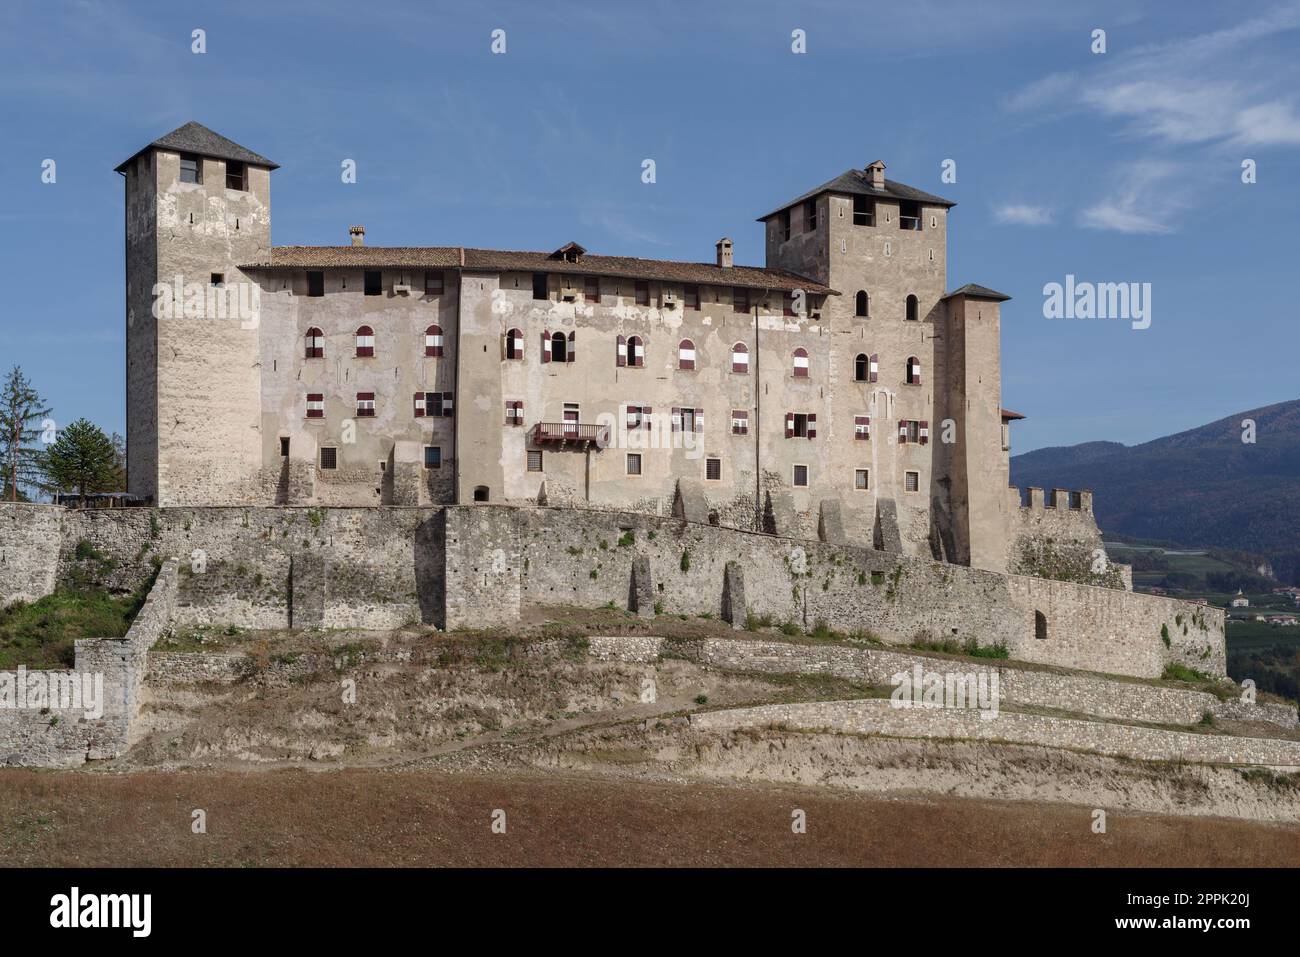 Castello di Cles nella Val di non, Trentino-Alto Adige, Italia Foto Stock